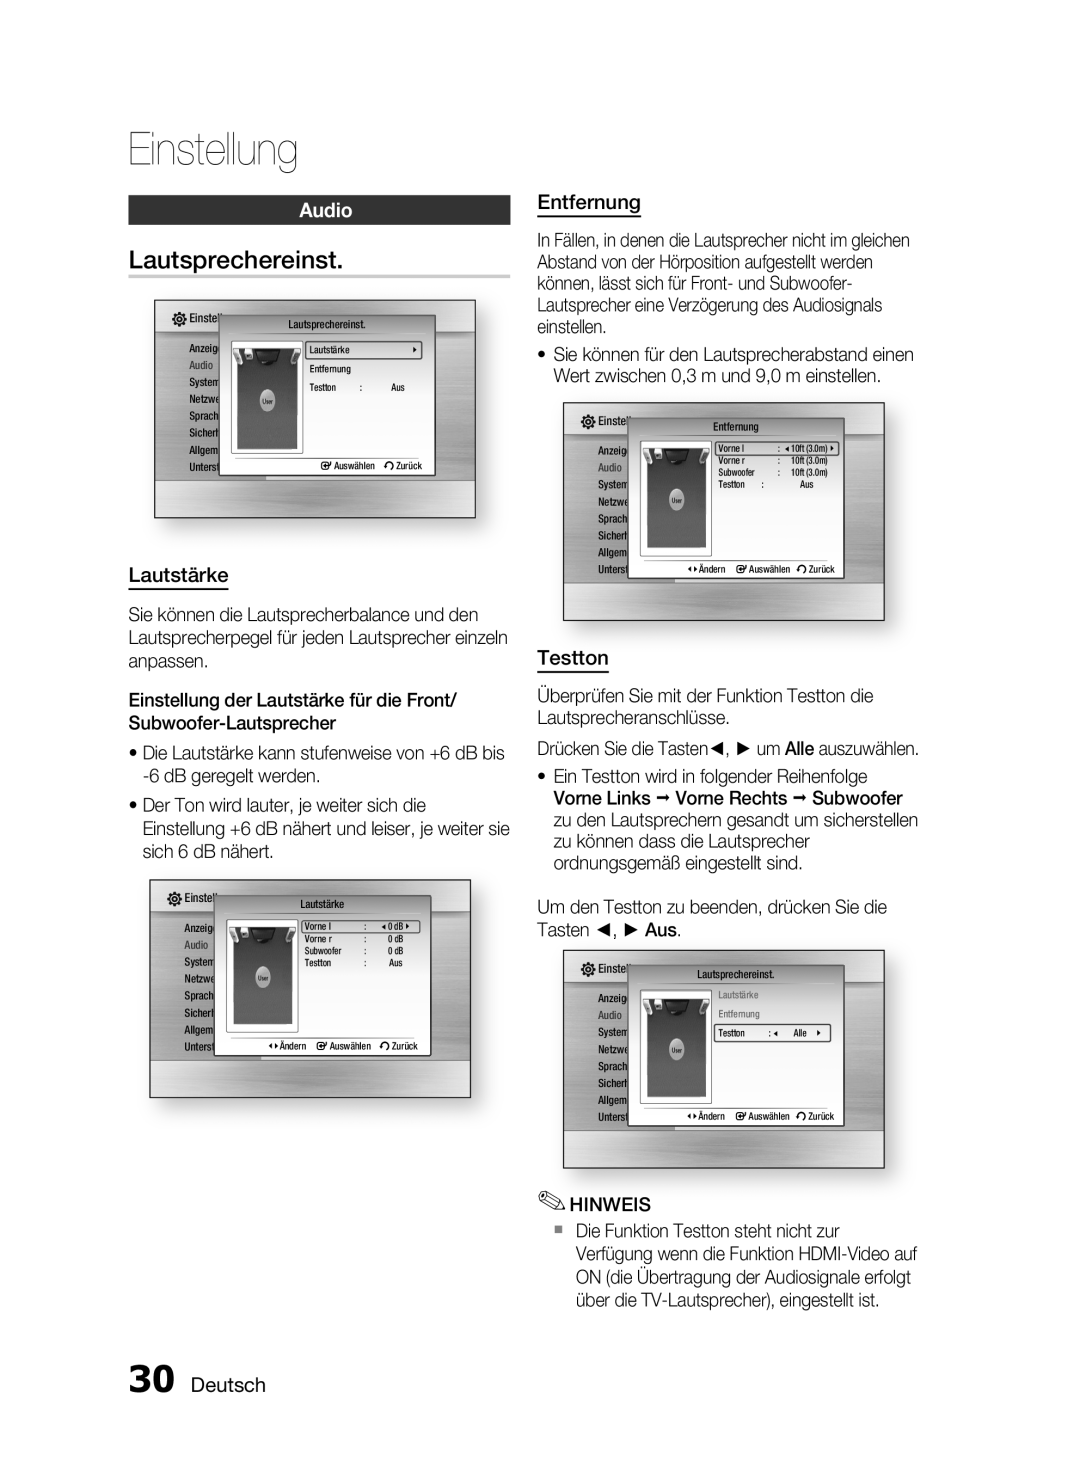 Samsung HT-C6200/XEF manual Lautsprechereinst, Lautstärke, Entfernung, Testton, Deutsch, Einstellung, Audio 